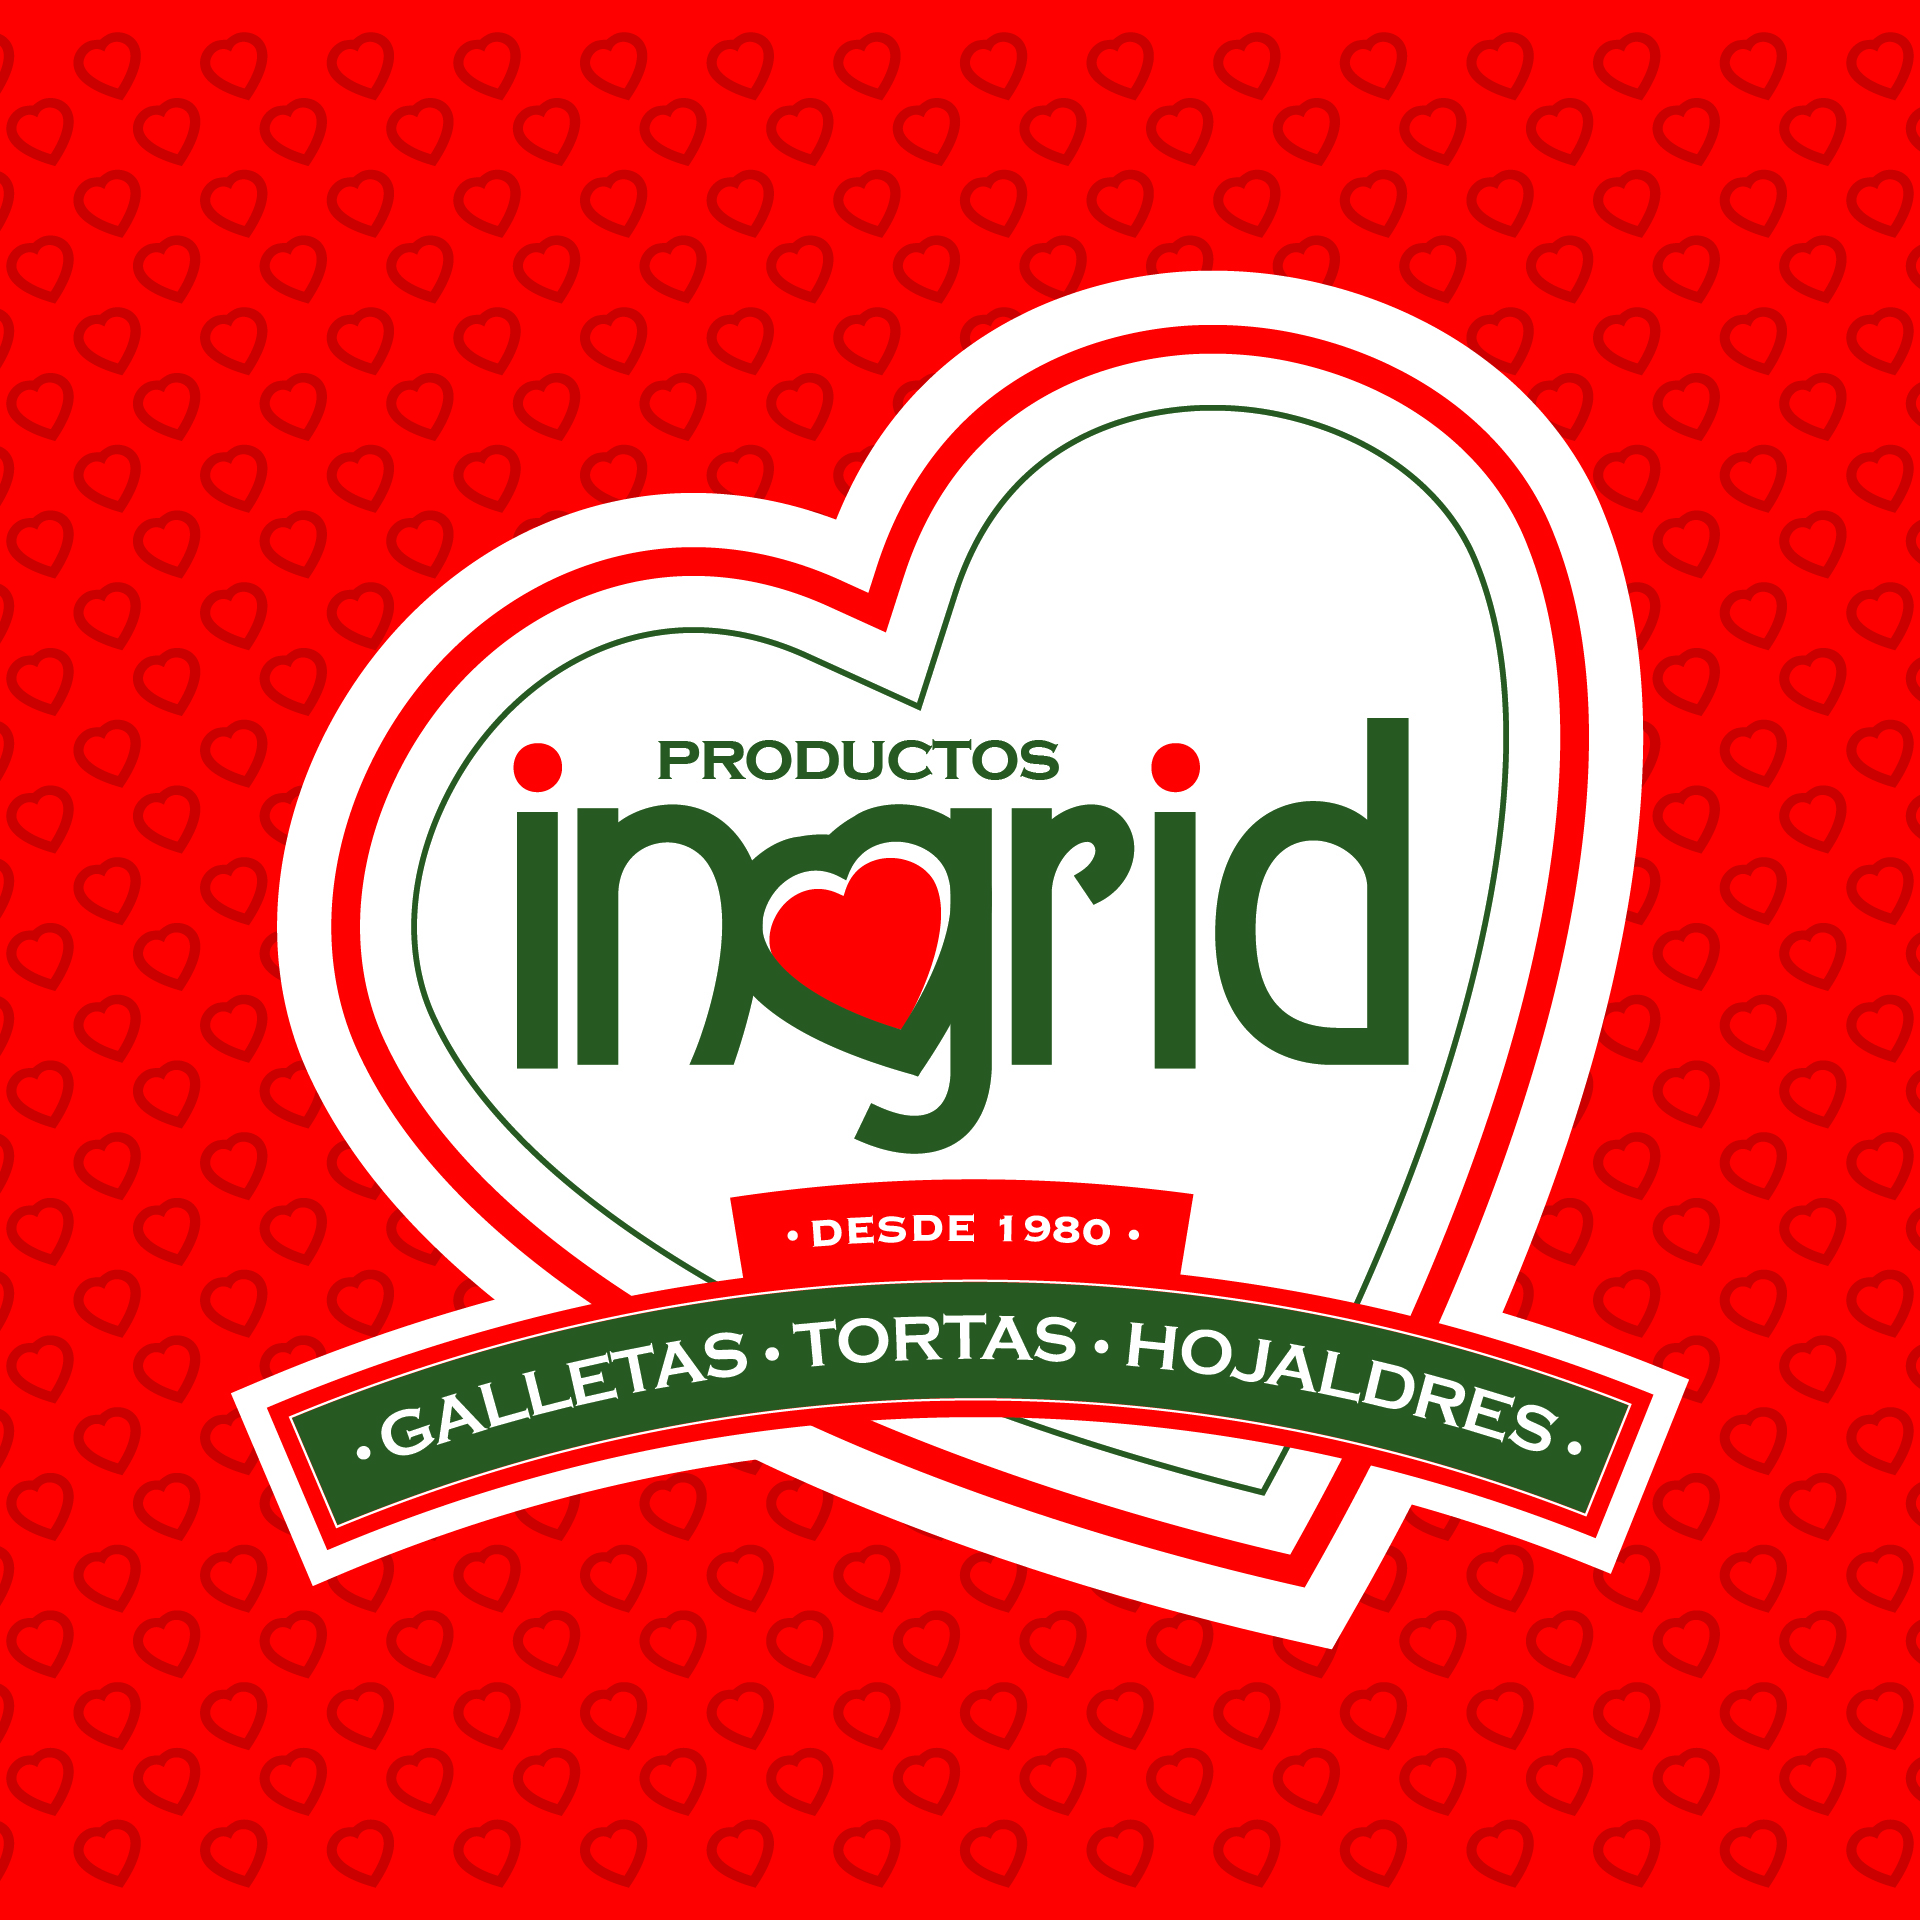 Logotipo para marca de productos de pasteleria y reposteria Productos Ingrid